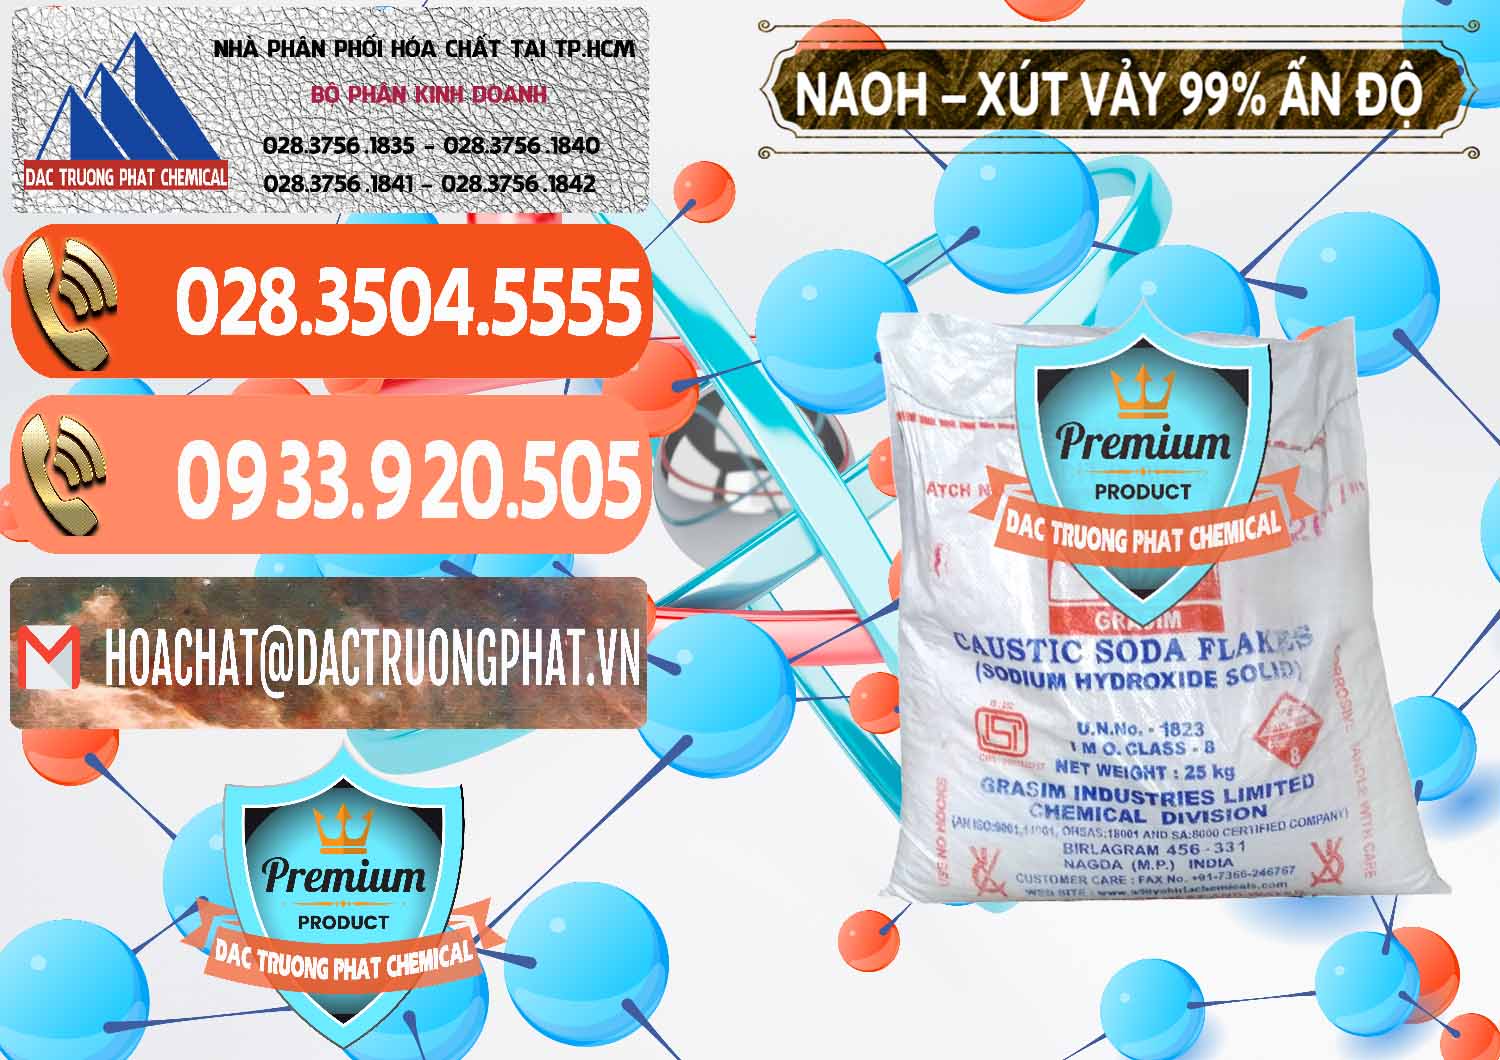 Nơi chuyên bán và cung cấp Xút Vảy - NaOH Vảy 99% Aditya Birla Grasim Ấn Độ India - 0171 - Phân phối - bán hóa chất tại TP.HCM - hoachatmientay.com